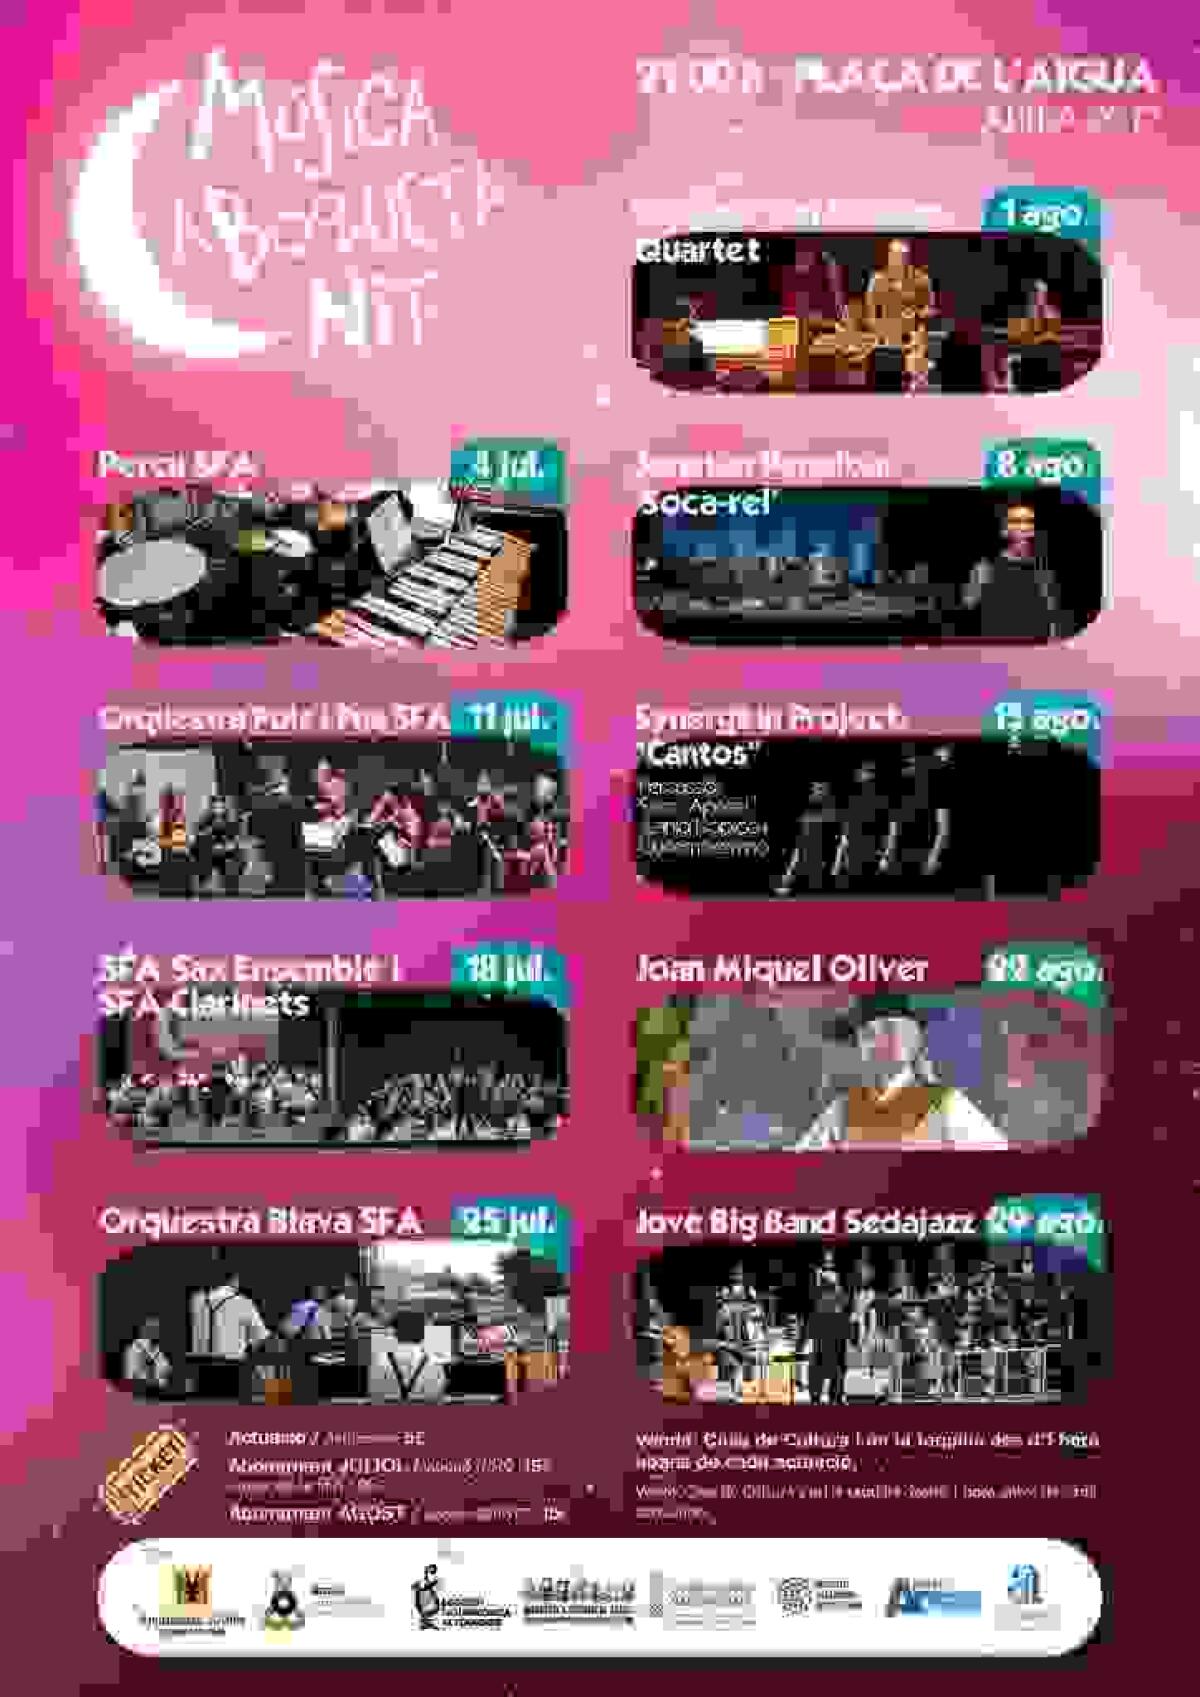 Altea · Jazz, canto de estilo, cantautores y música contemporánea protagonizan “Música a Boqueta Nit” en el mes de agosto